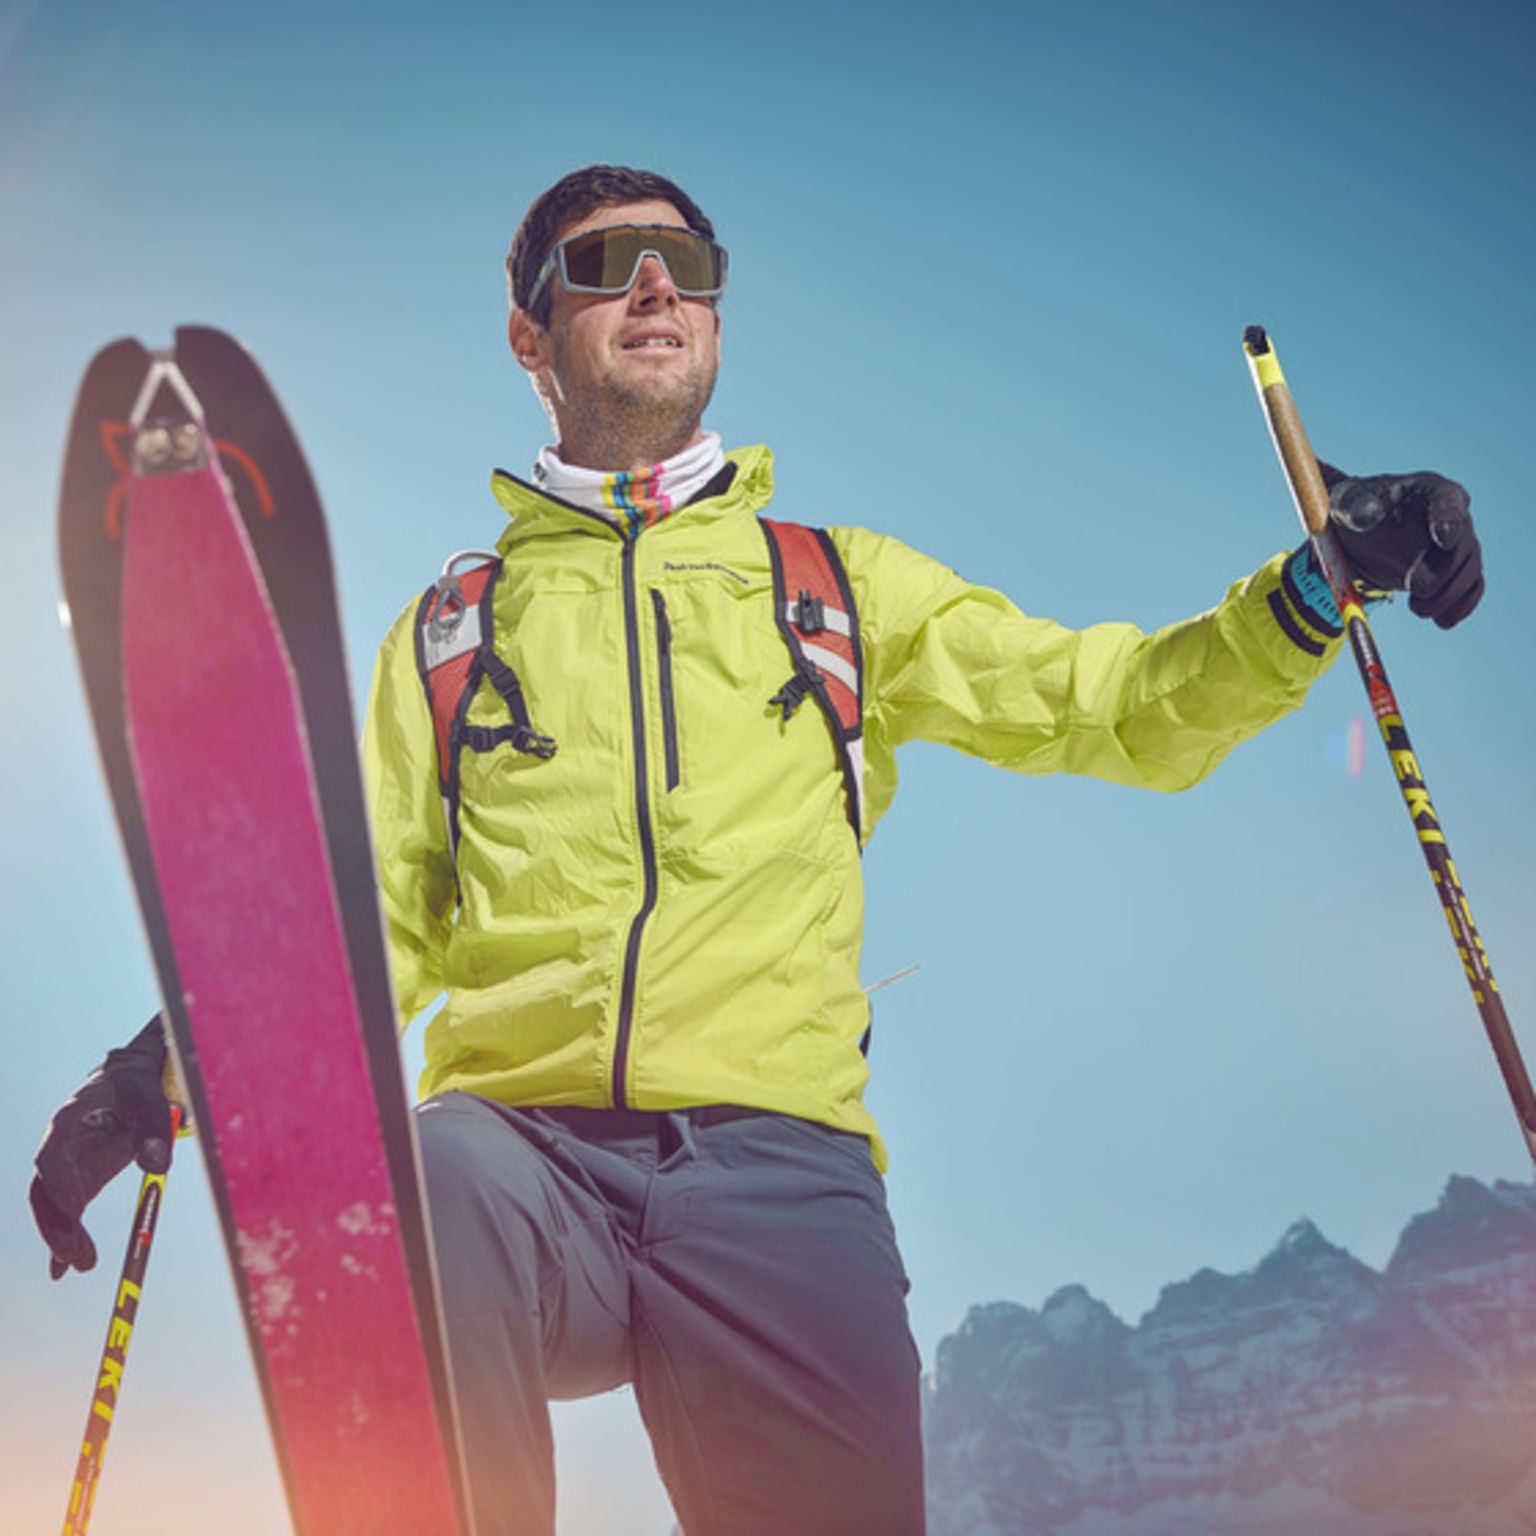 Yannick Ecoeur dans son équipement de ski, Valais, Suisse